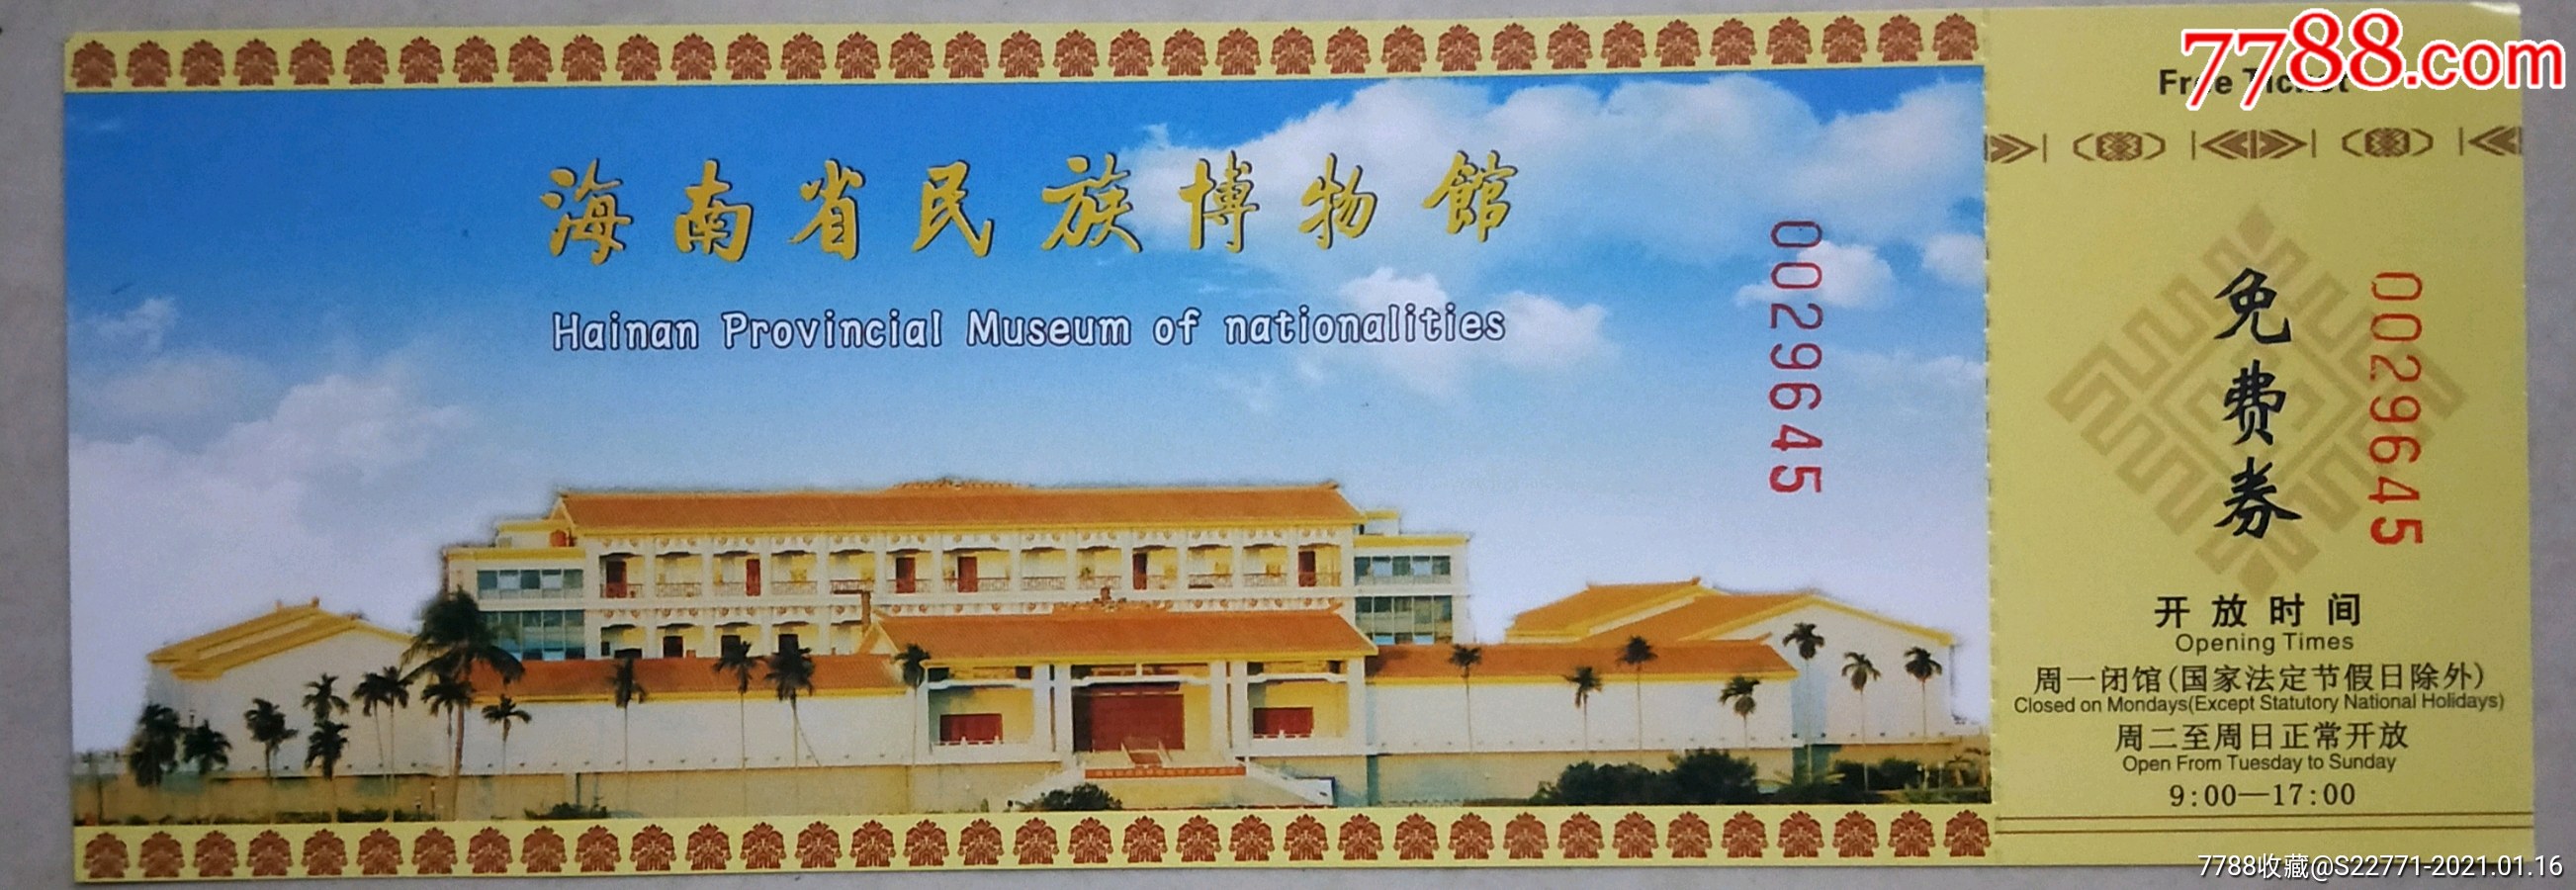 海南省民族博物馆9